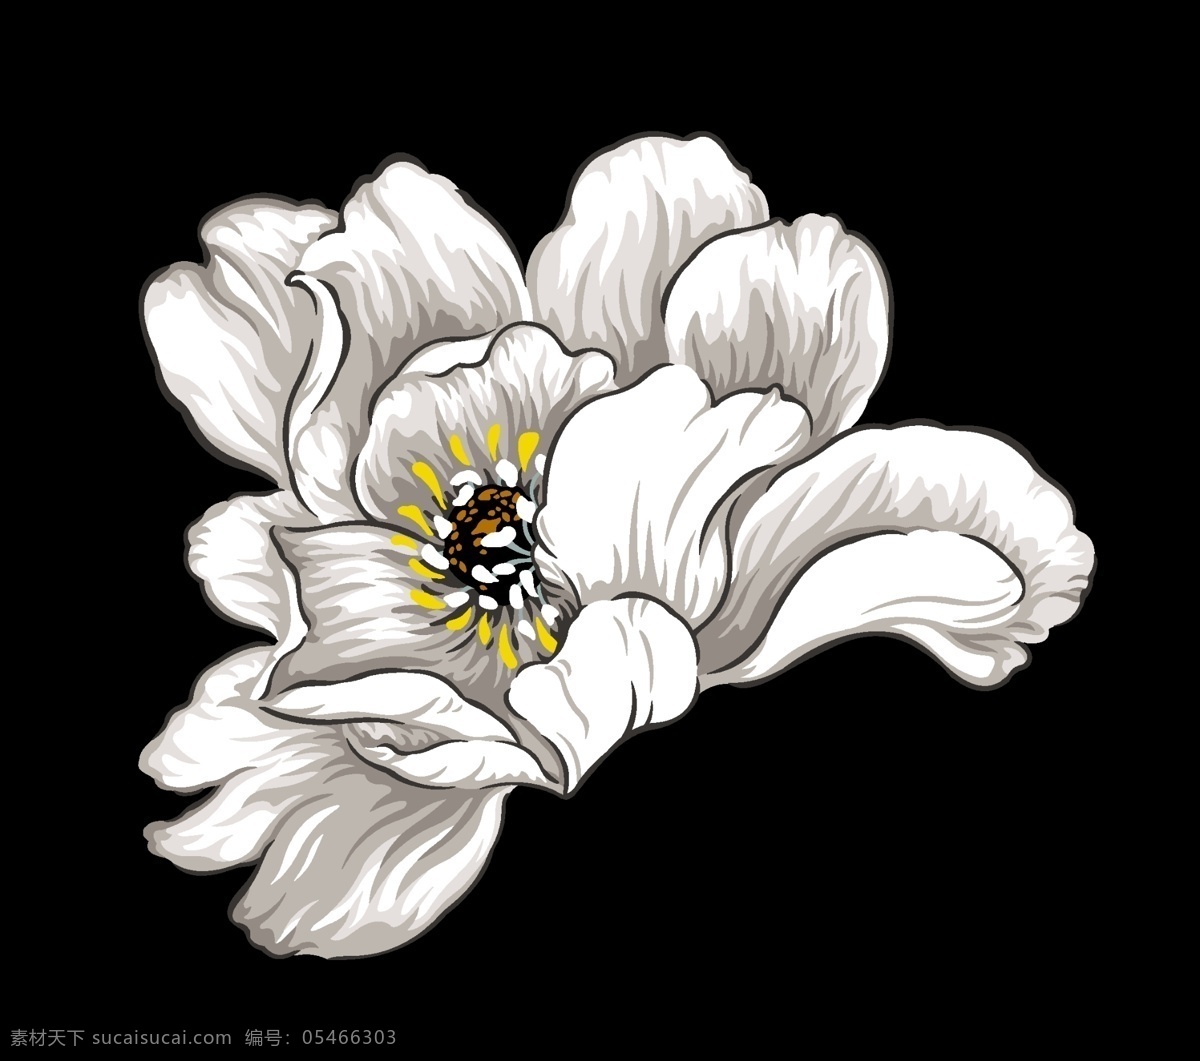 手绘花卉图片 手绘花 创意花卉 印花素材 高清 服装图案素材 家纺图案素材 花卉